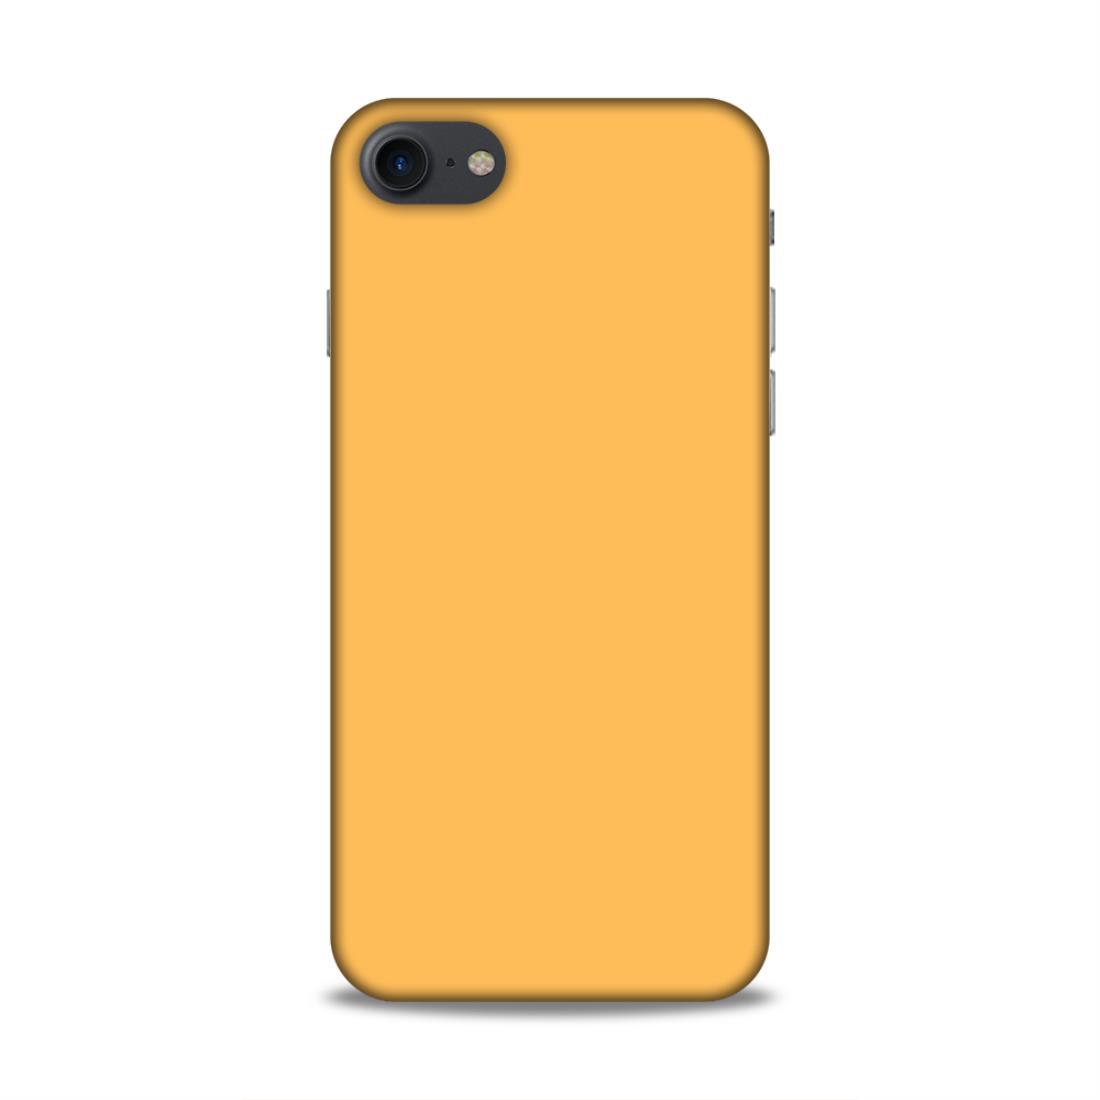 Peach Classic Plain iPhone 8 Phone Cover Case